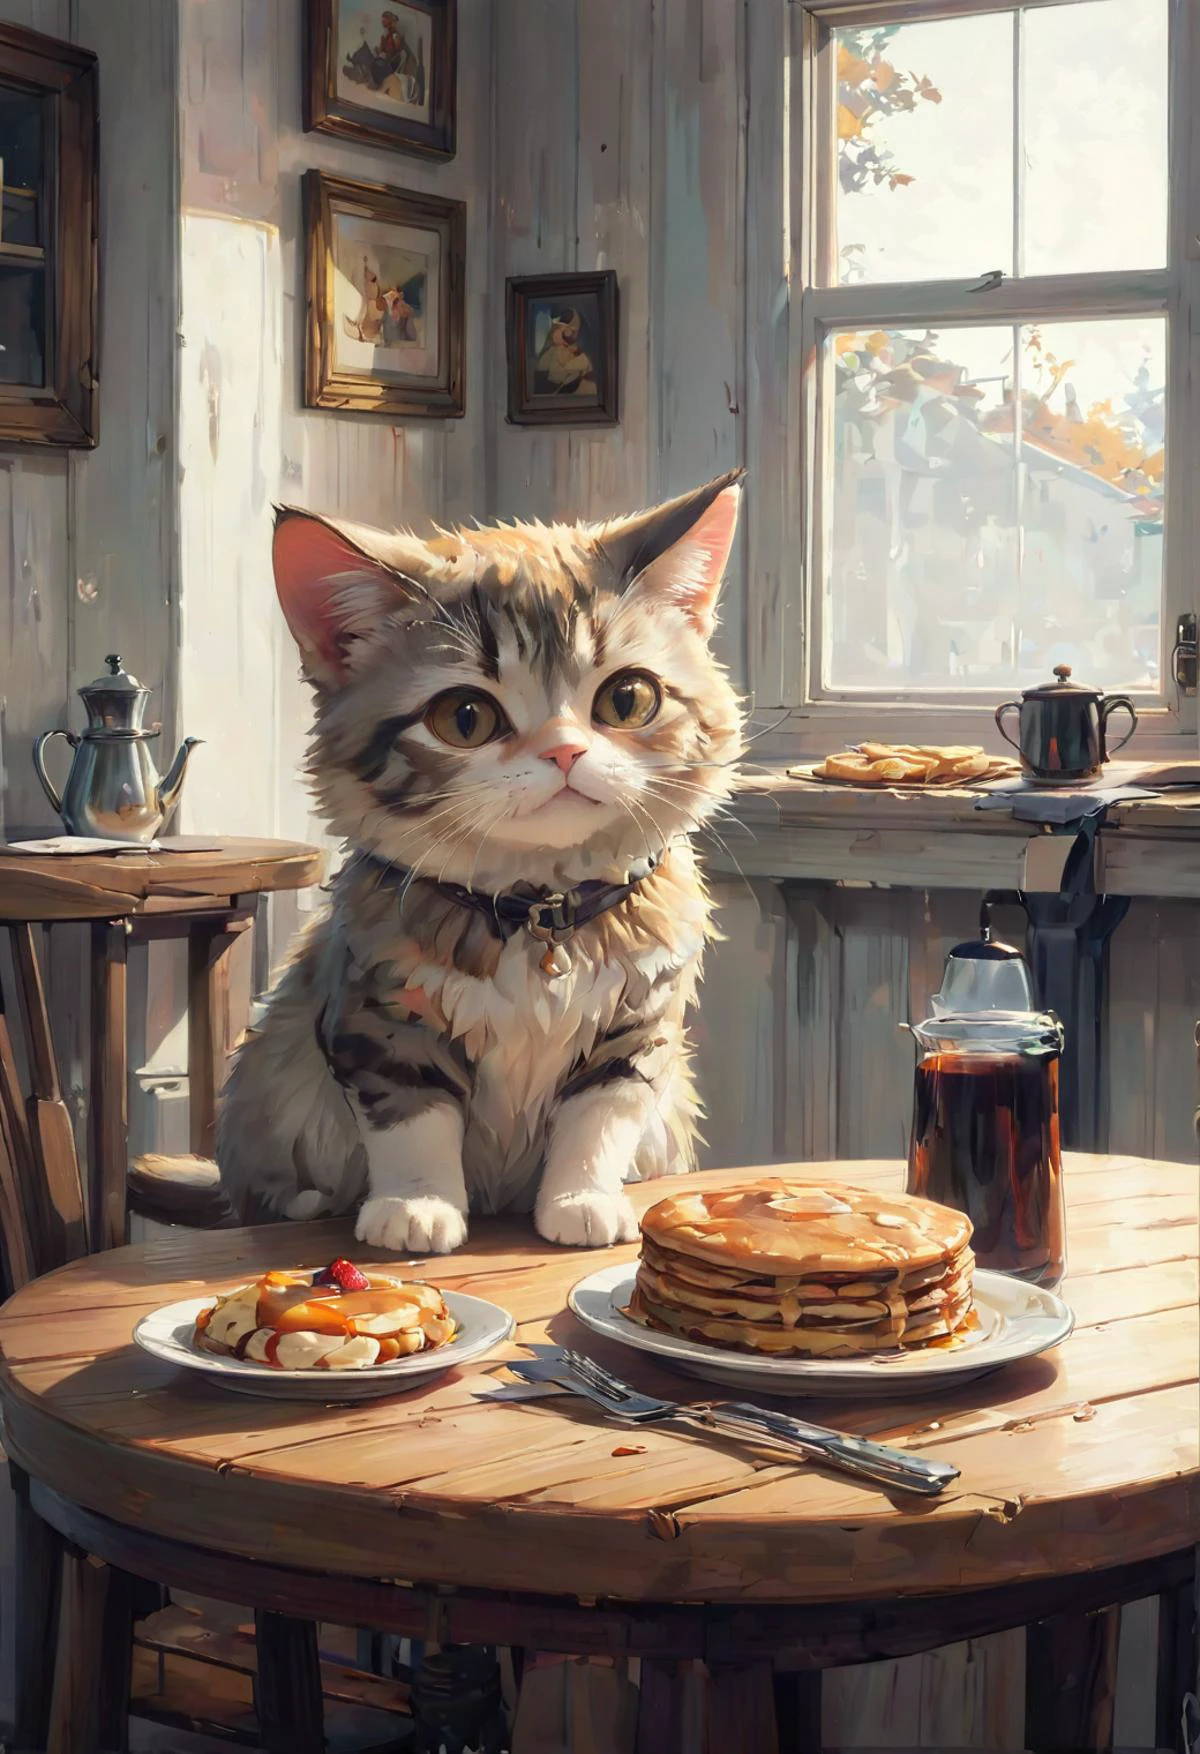 포지티브 클립 L고양이, 나무 테이블, 팬케이크 더미, syrup
Positive Clip G
A cat sits on a 나무 테이블 and looks at a 팬케이크 더미 with syrup
Positive Refiner
A cat sits on a 나무 테이블 and looks at a 팬케이크 더미 with syrup
---------